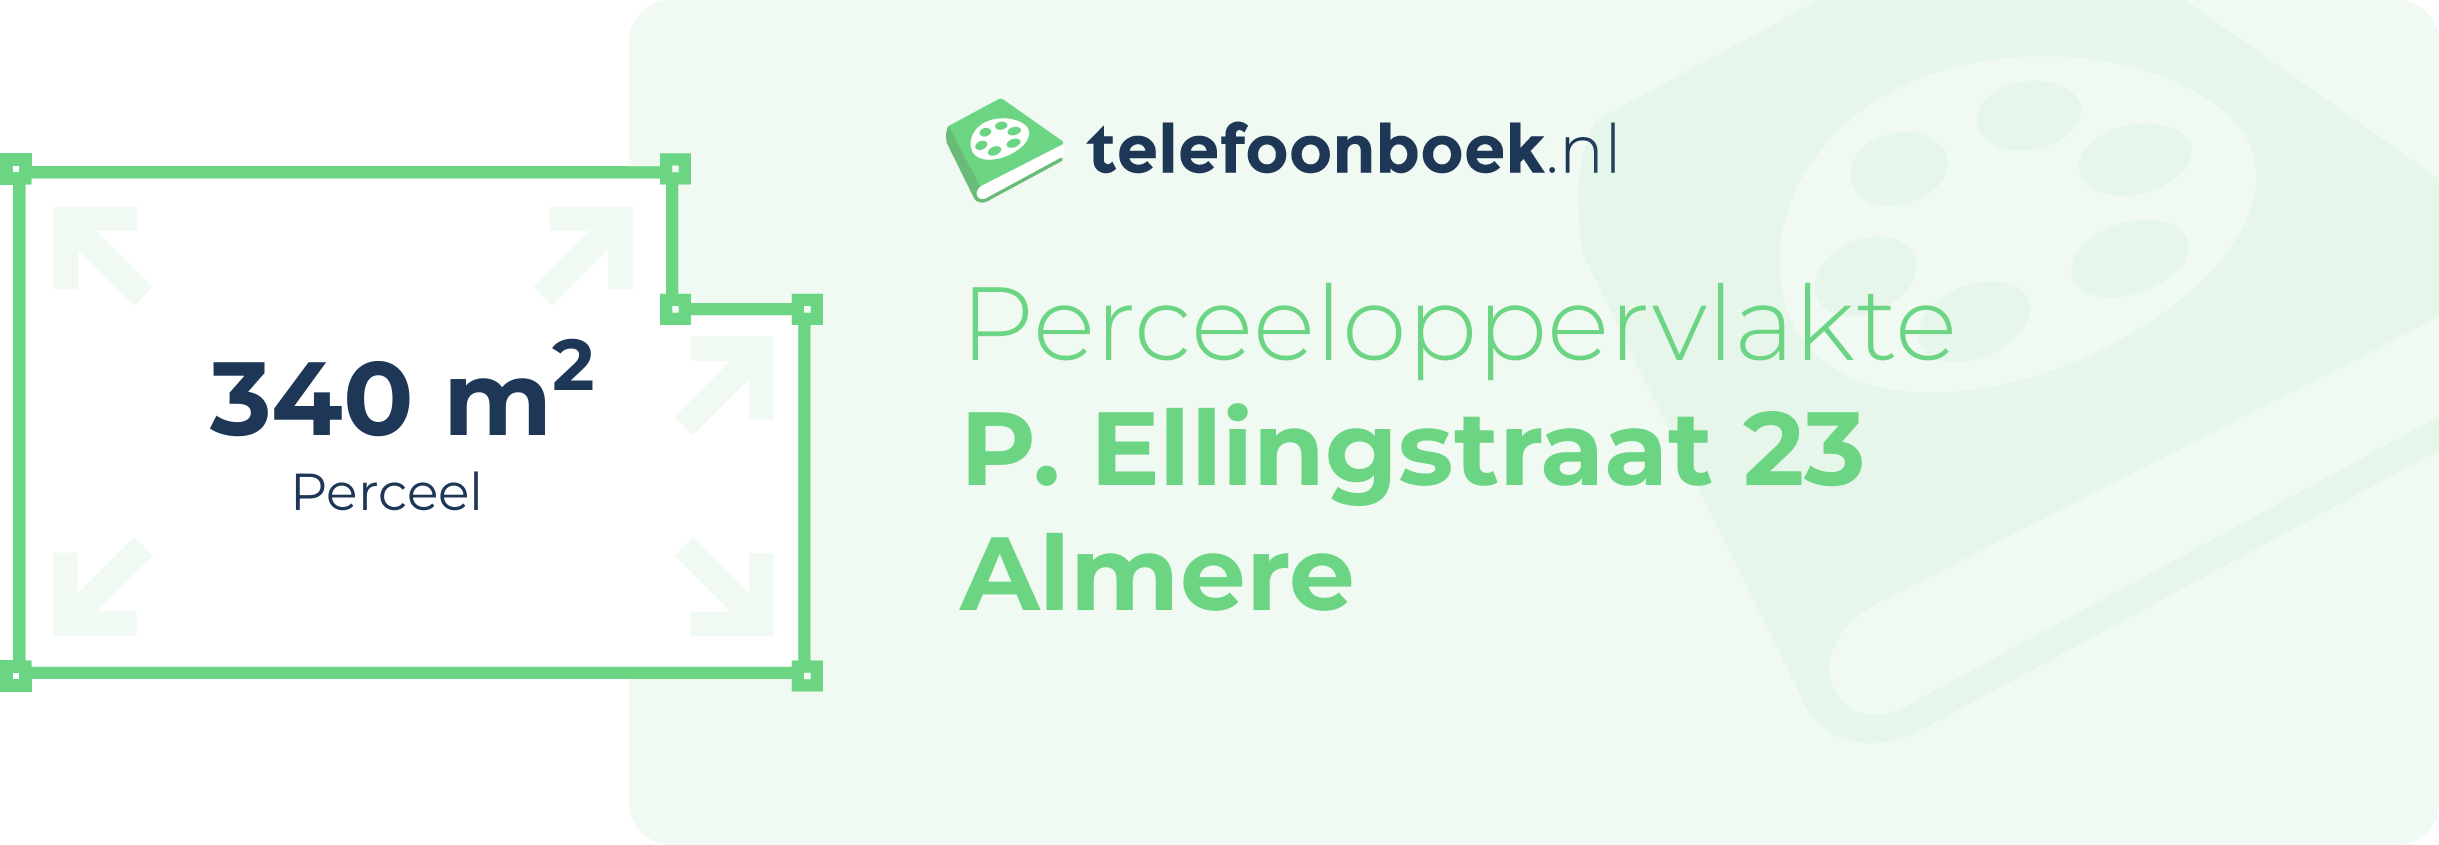 Perceeloppervlakte P. Ellingstraat 23 Almere